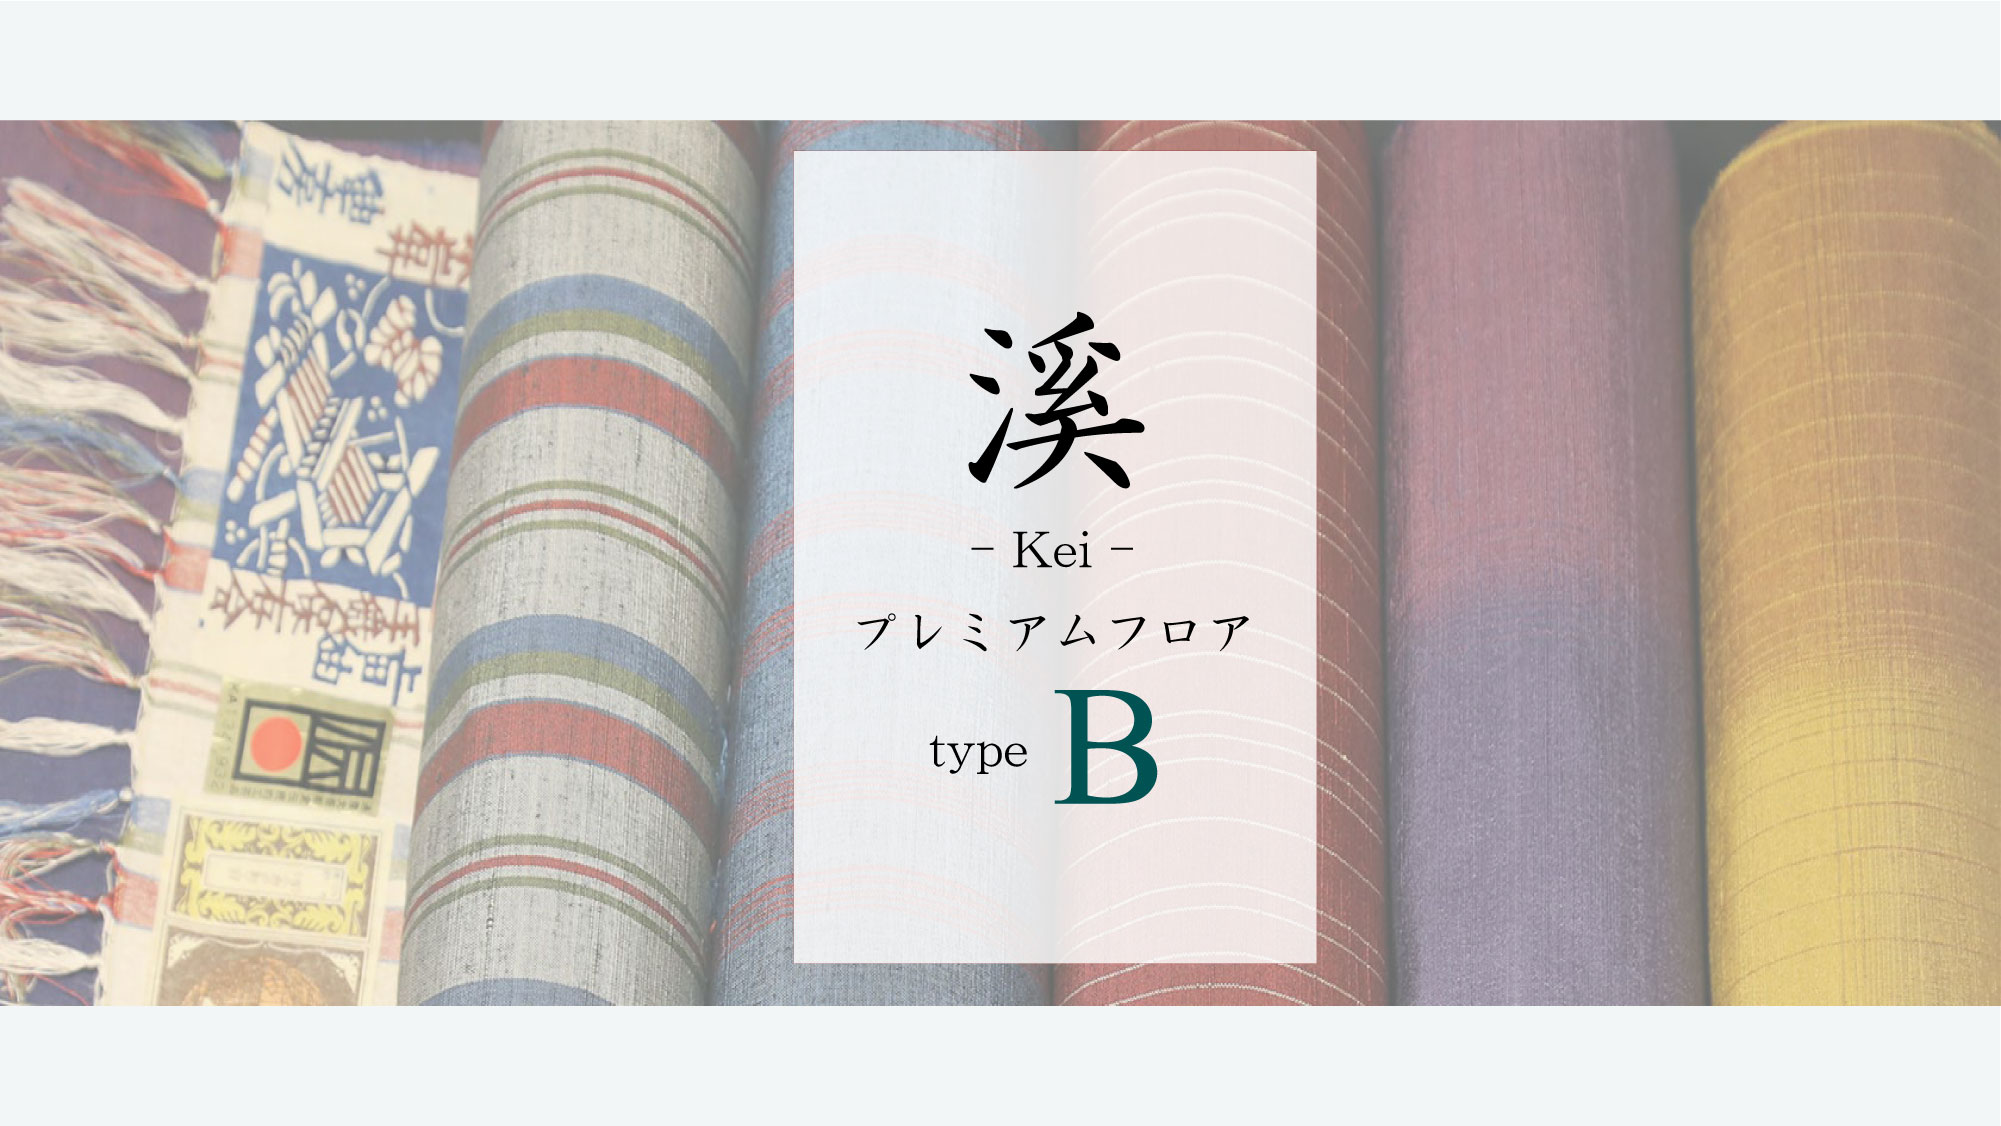 【溪-Kei-】10Fプレミアムフロア《type B》